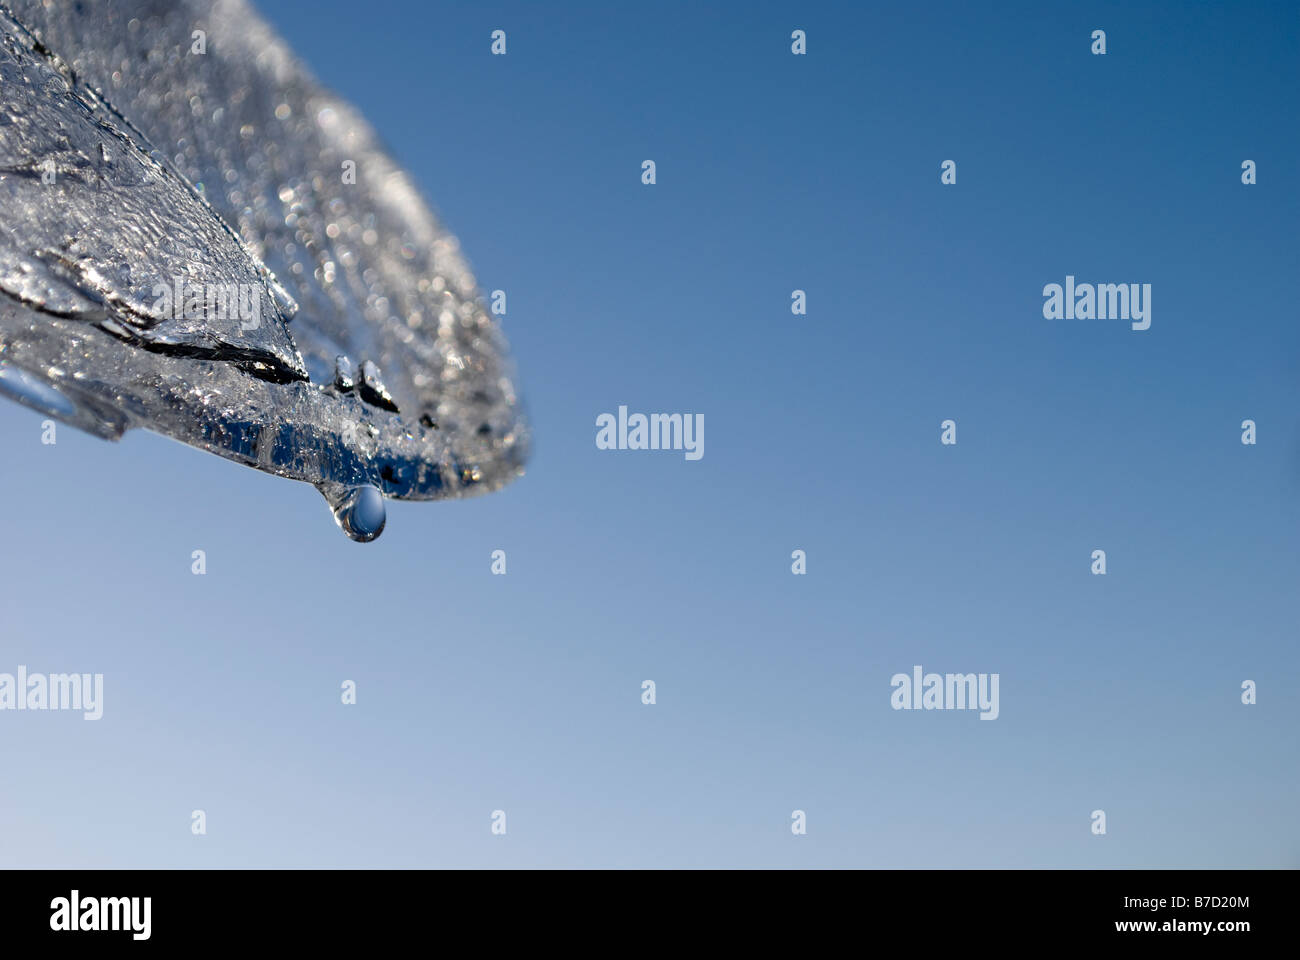 La formazione di ghiaccio nei confronti di un luminoso cielo blu Foto Stock